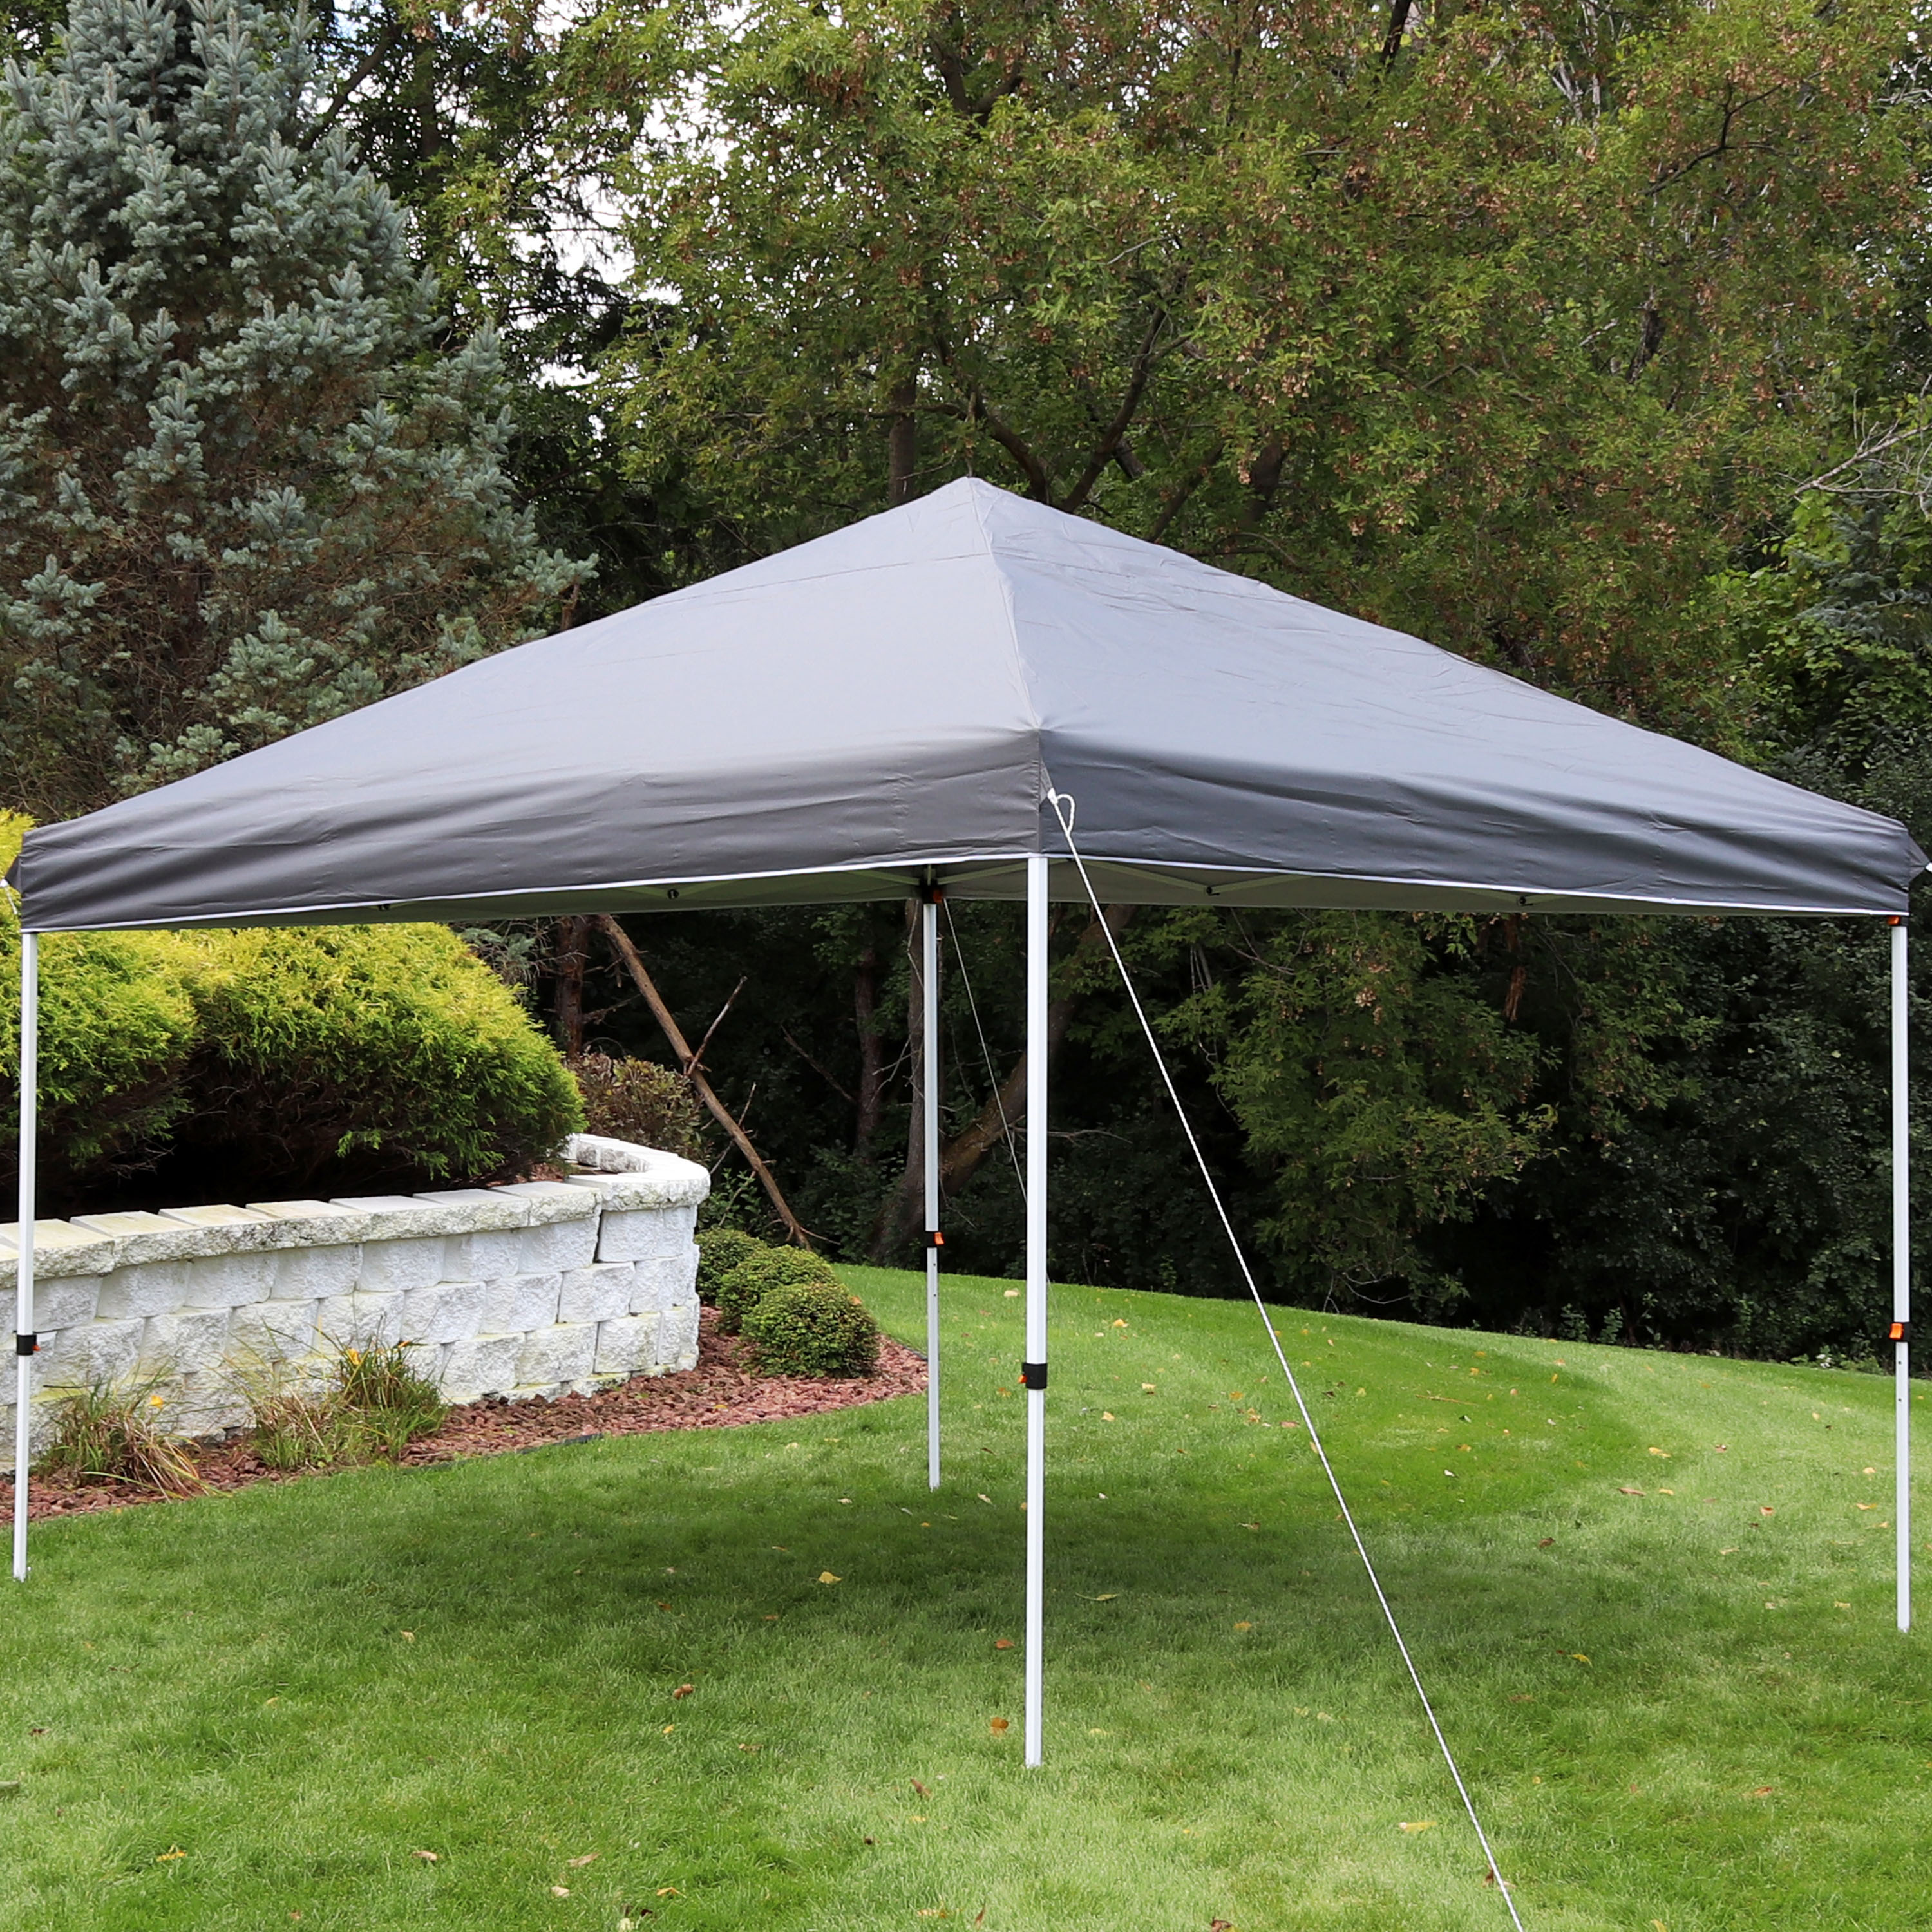 Sunnydaze Decor 12x12 Foot Standard Pop-Up Canopy Shade - Gray